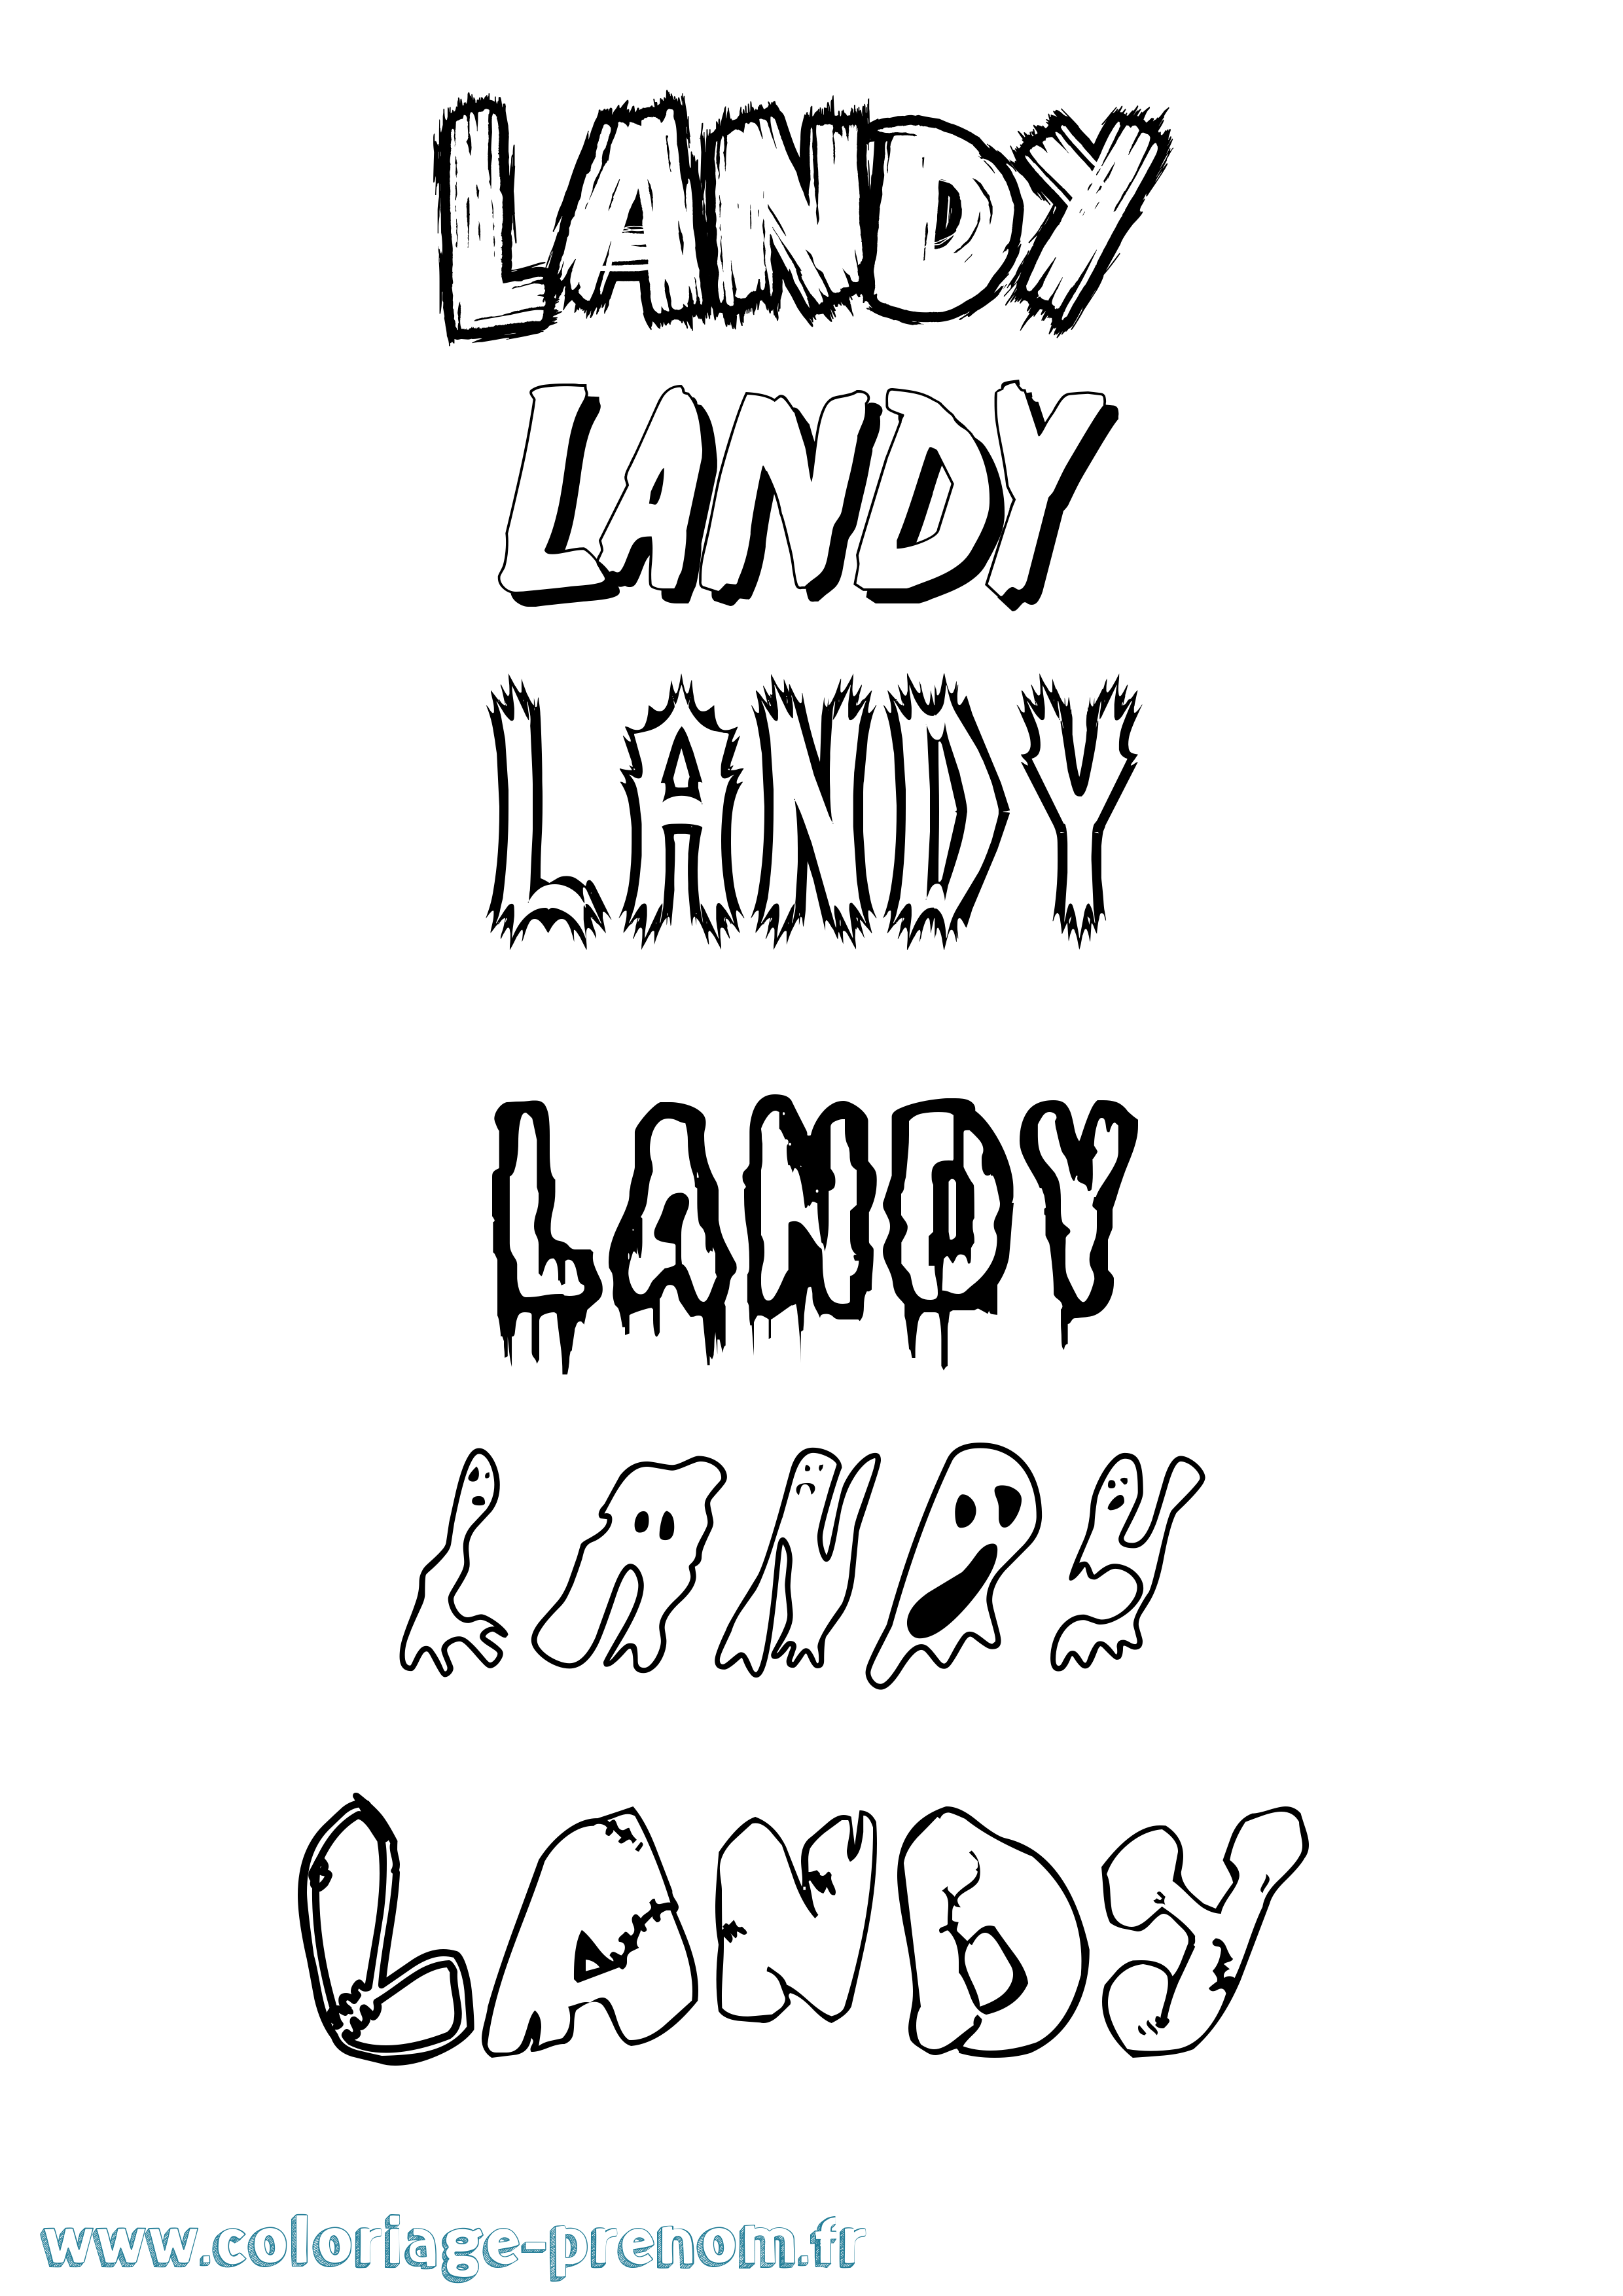 Coloriage prénom Landy Frisson